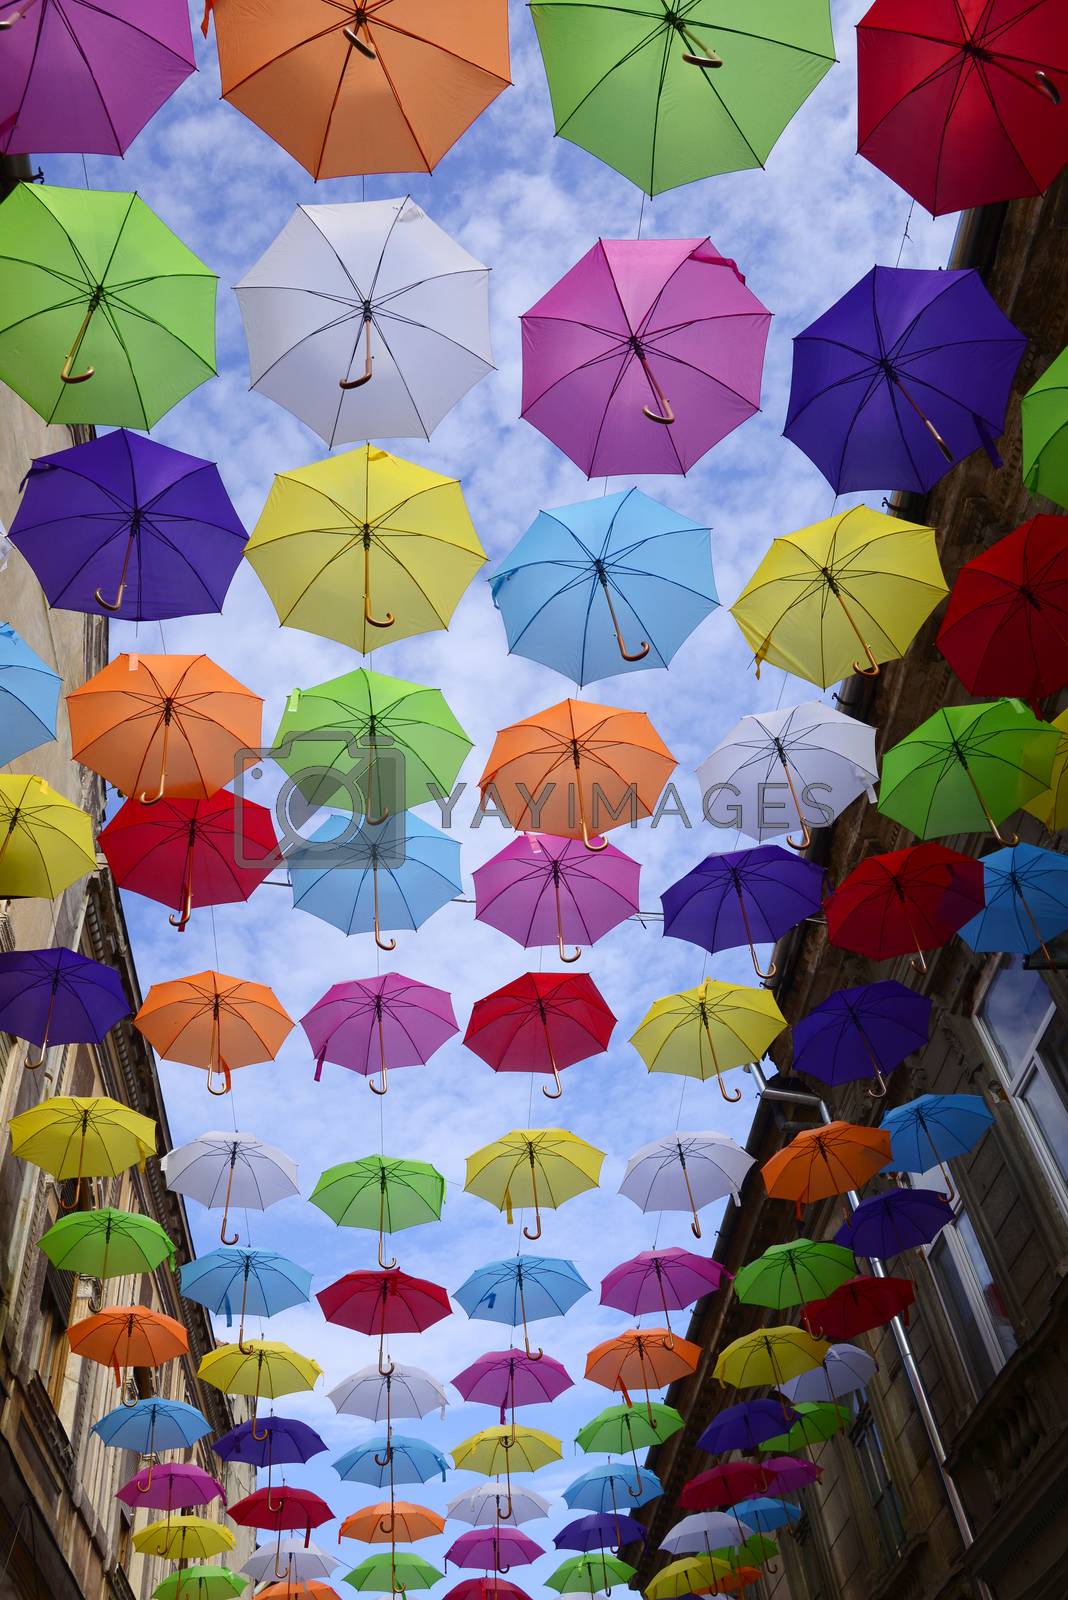 Royalty free image of Umbrella sky by tony4urban